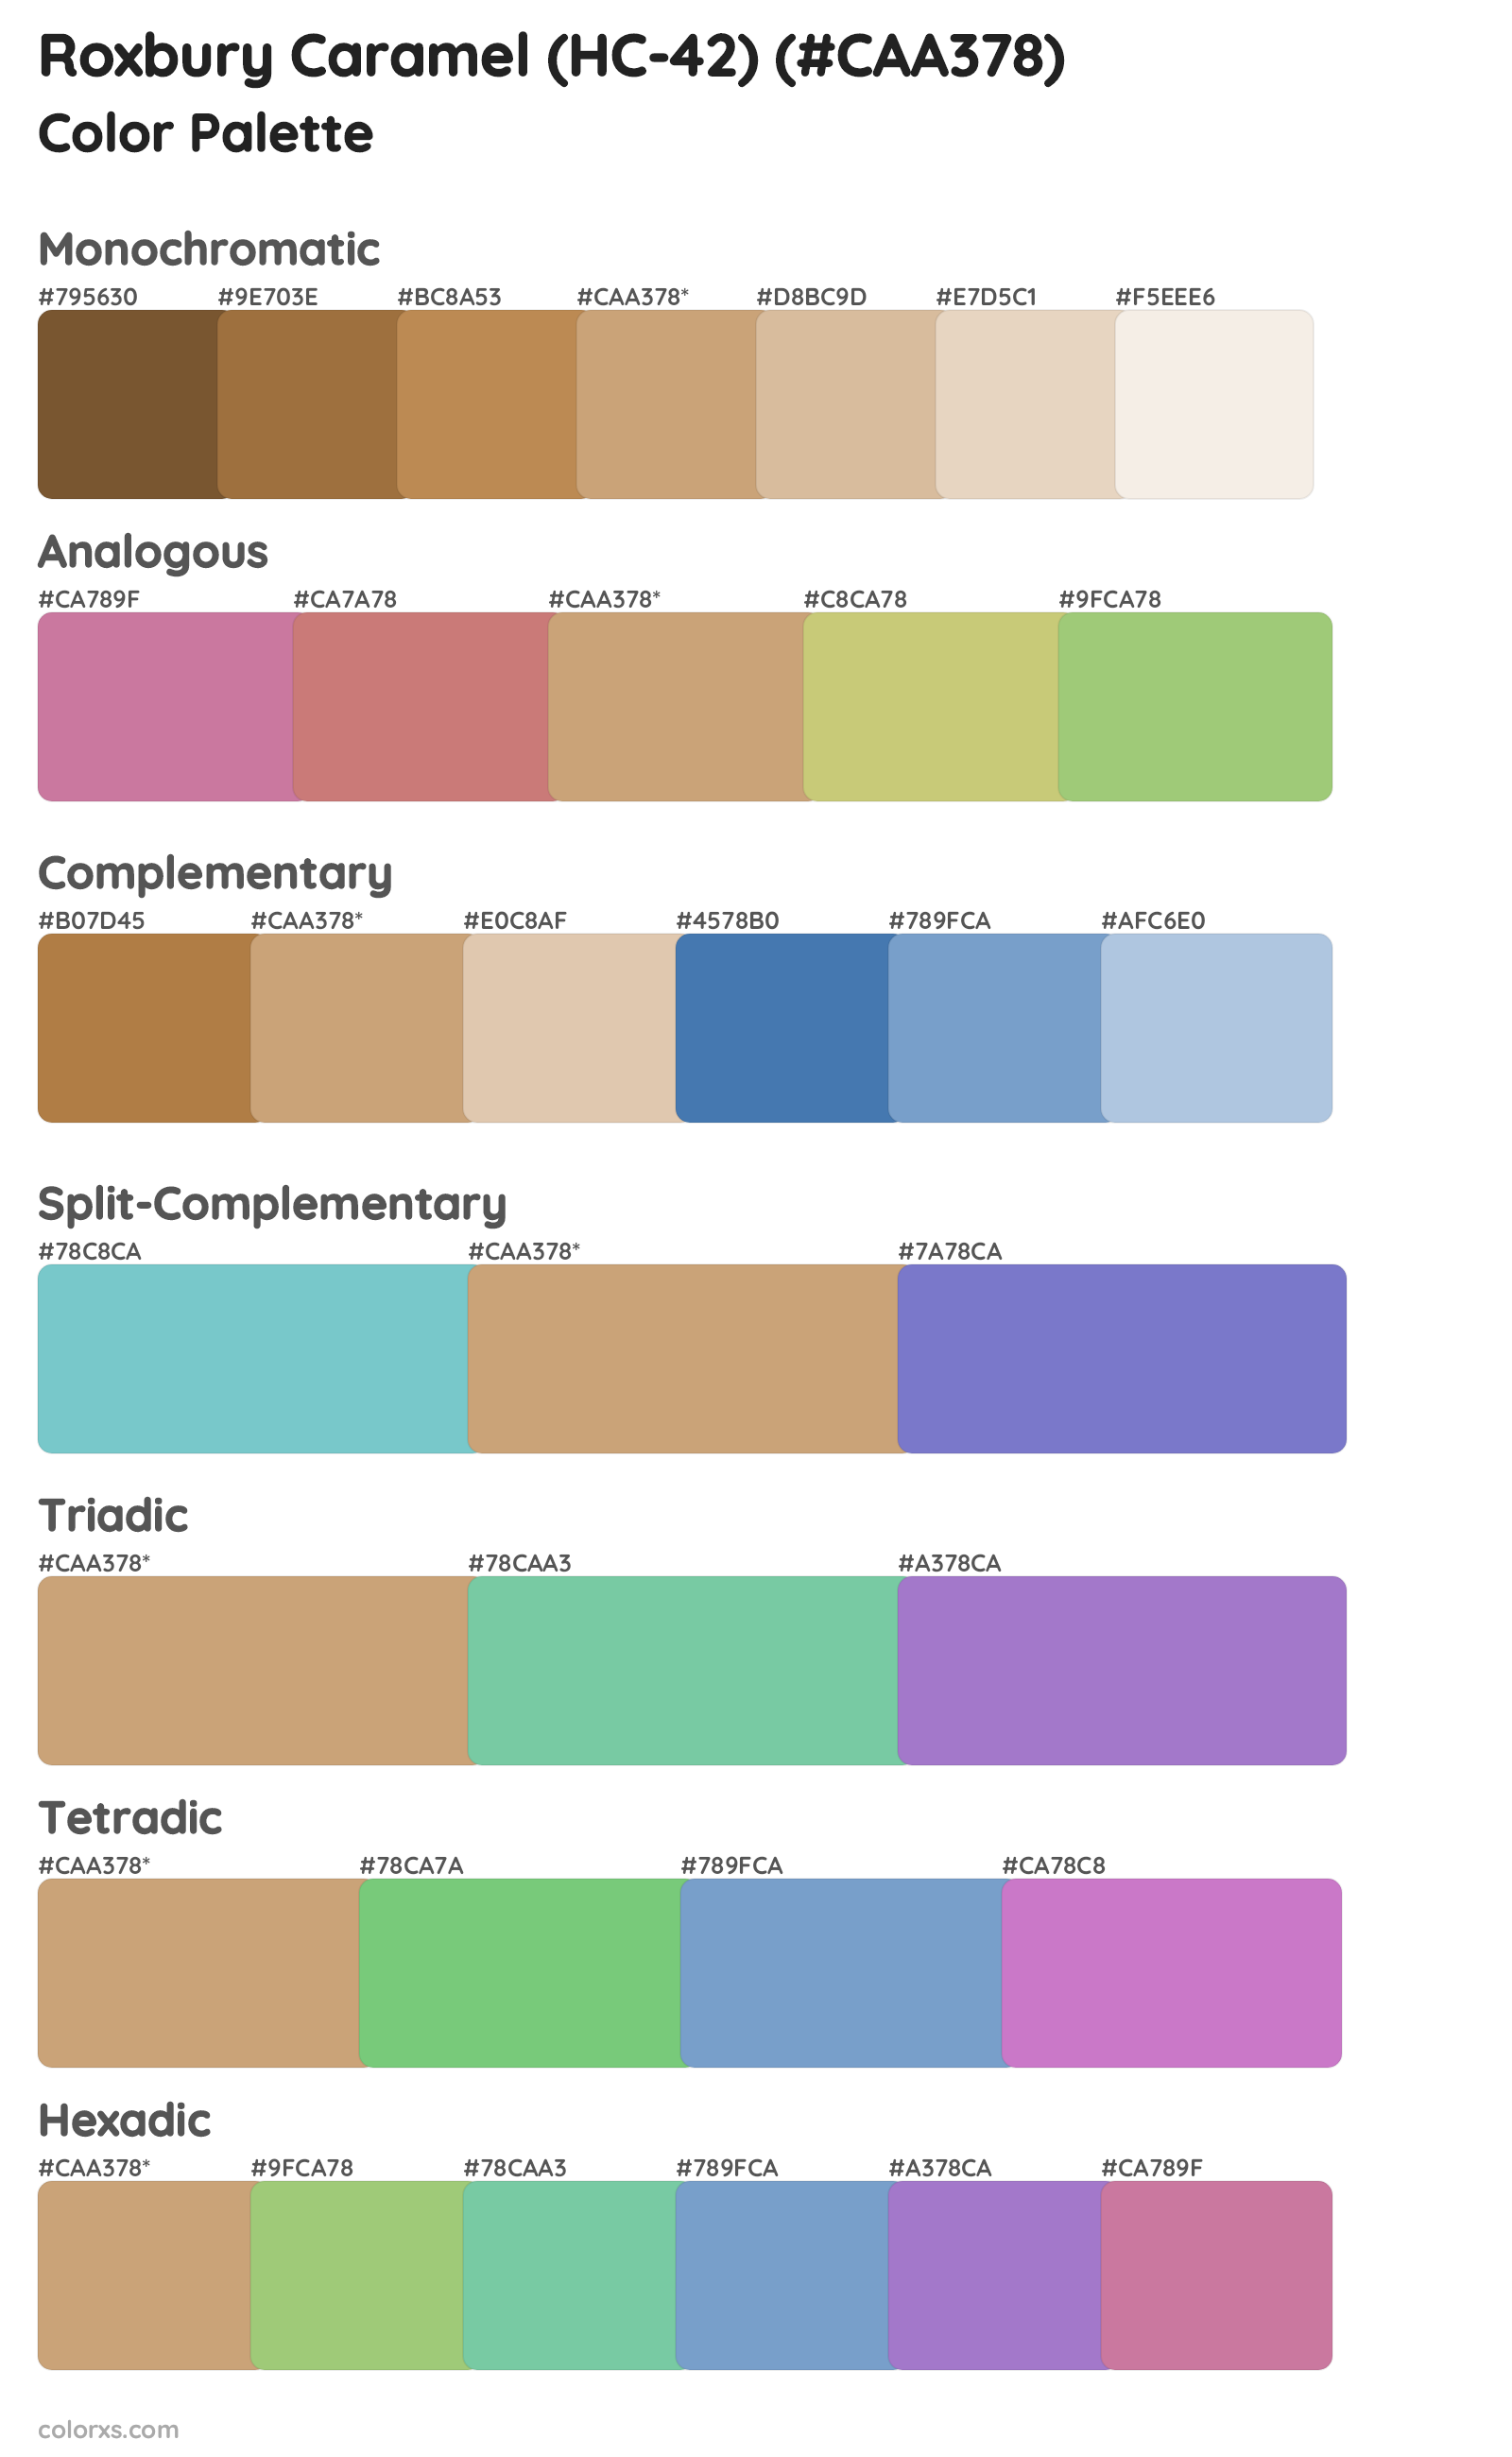 Roxbury Caramel (HC-42) Color Scheme Palettes